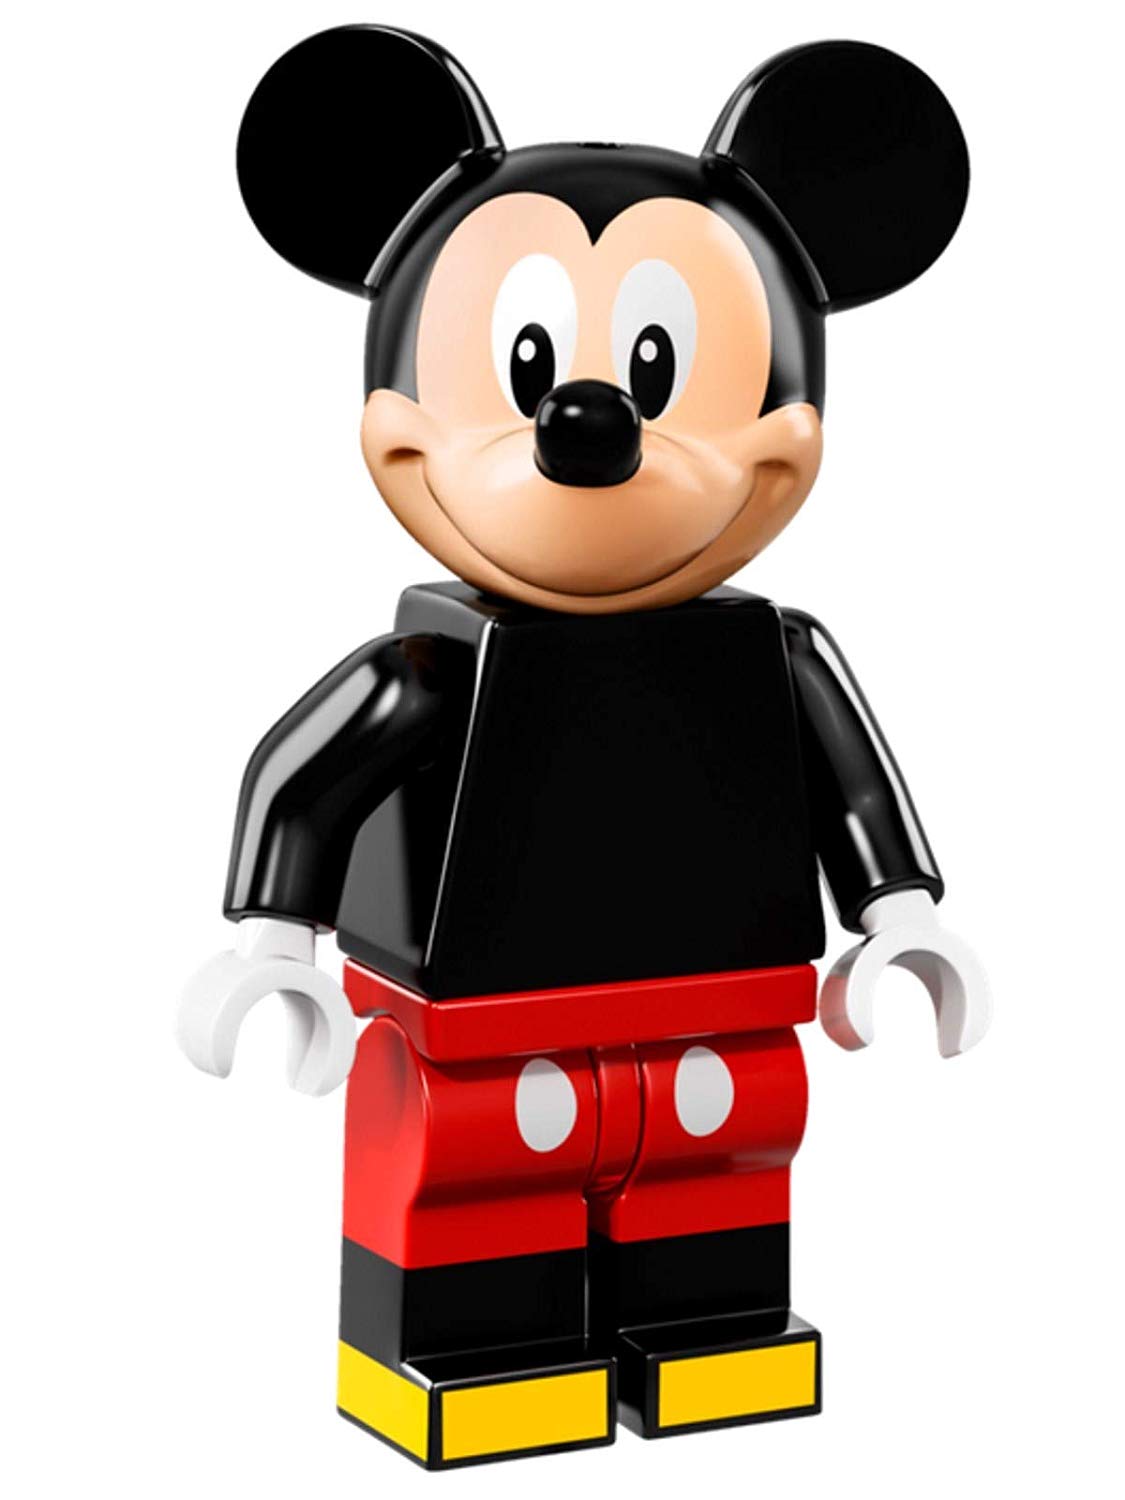 Lego Minif Igures Disney Series 71012, Mickey Mouse